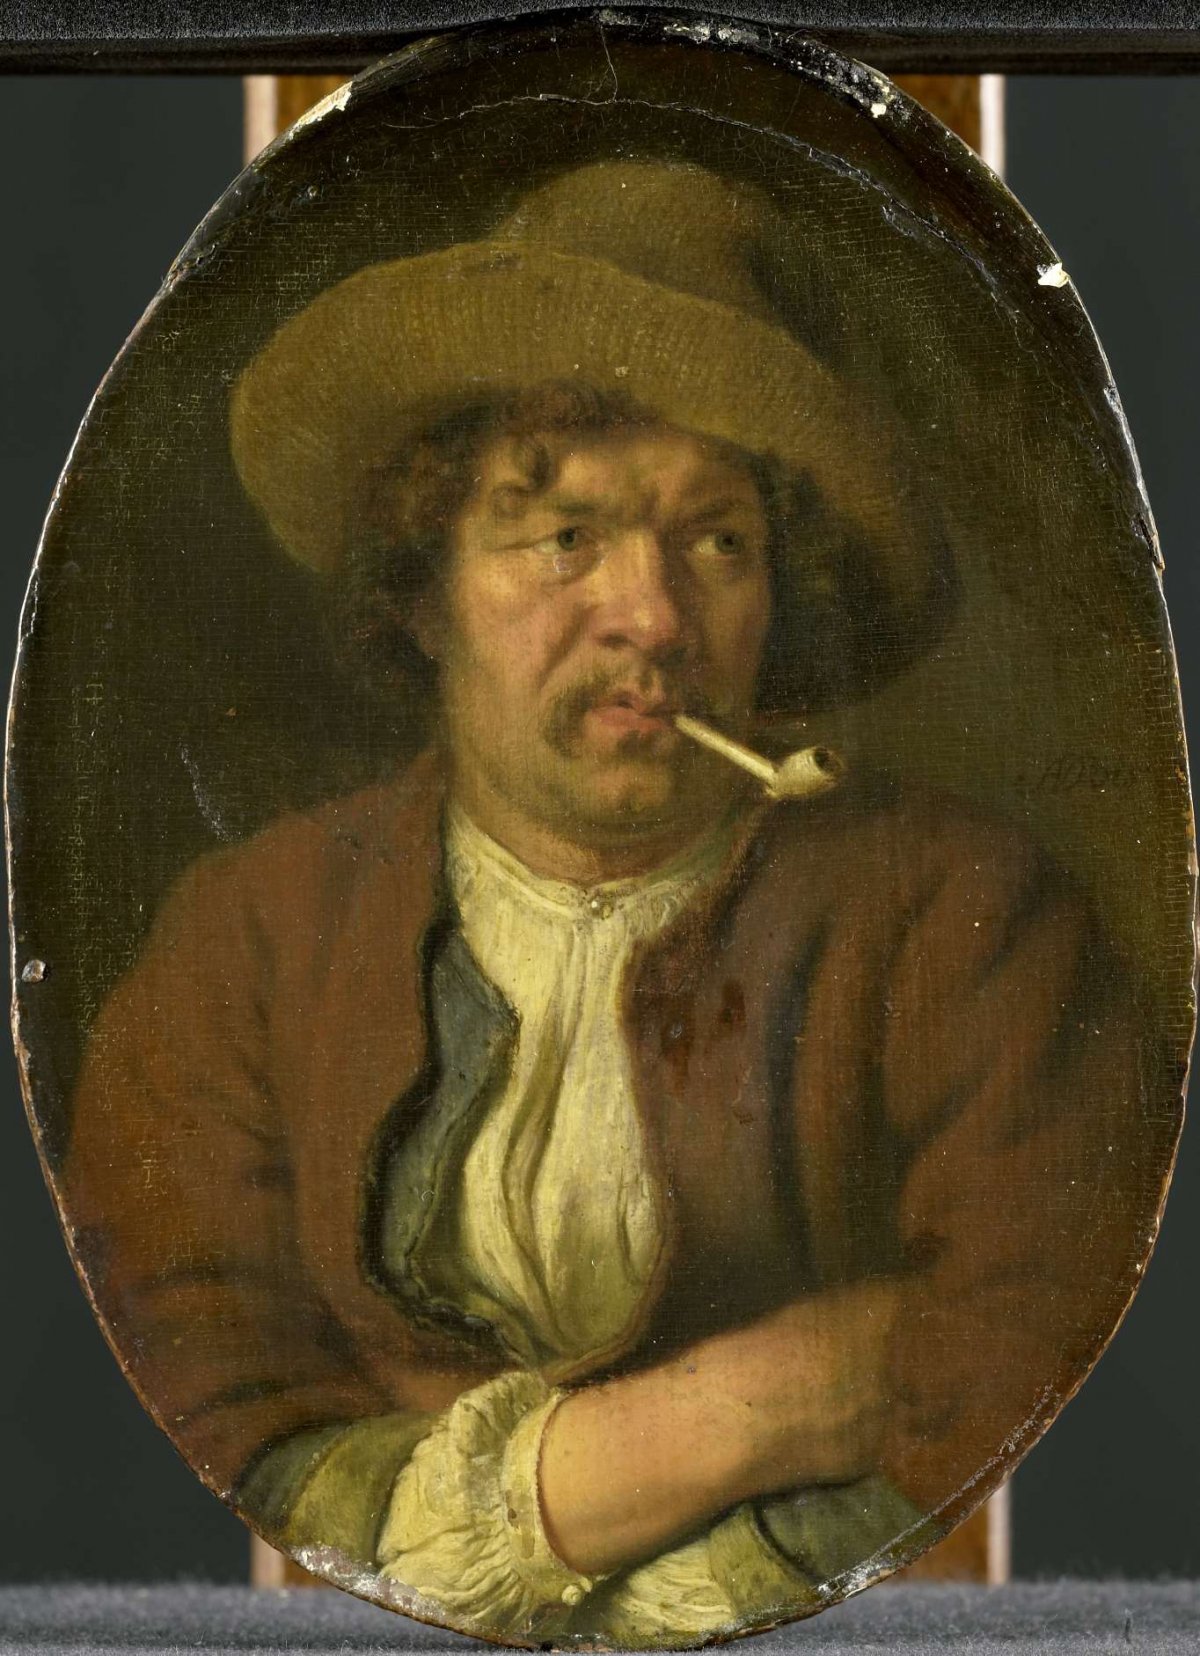 The Smoker, Ary de Vois, 1655 - 1680